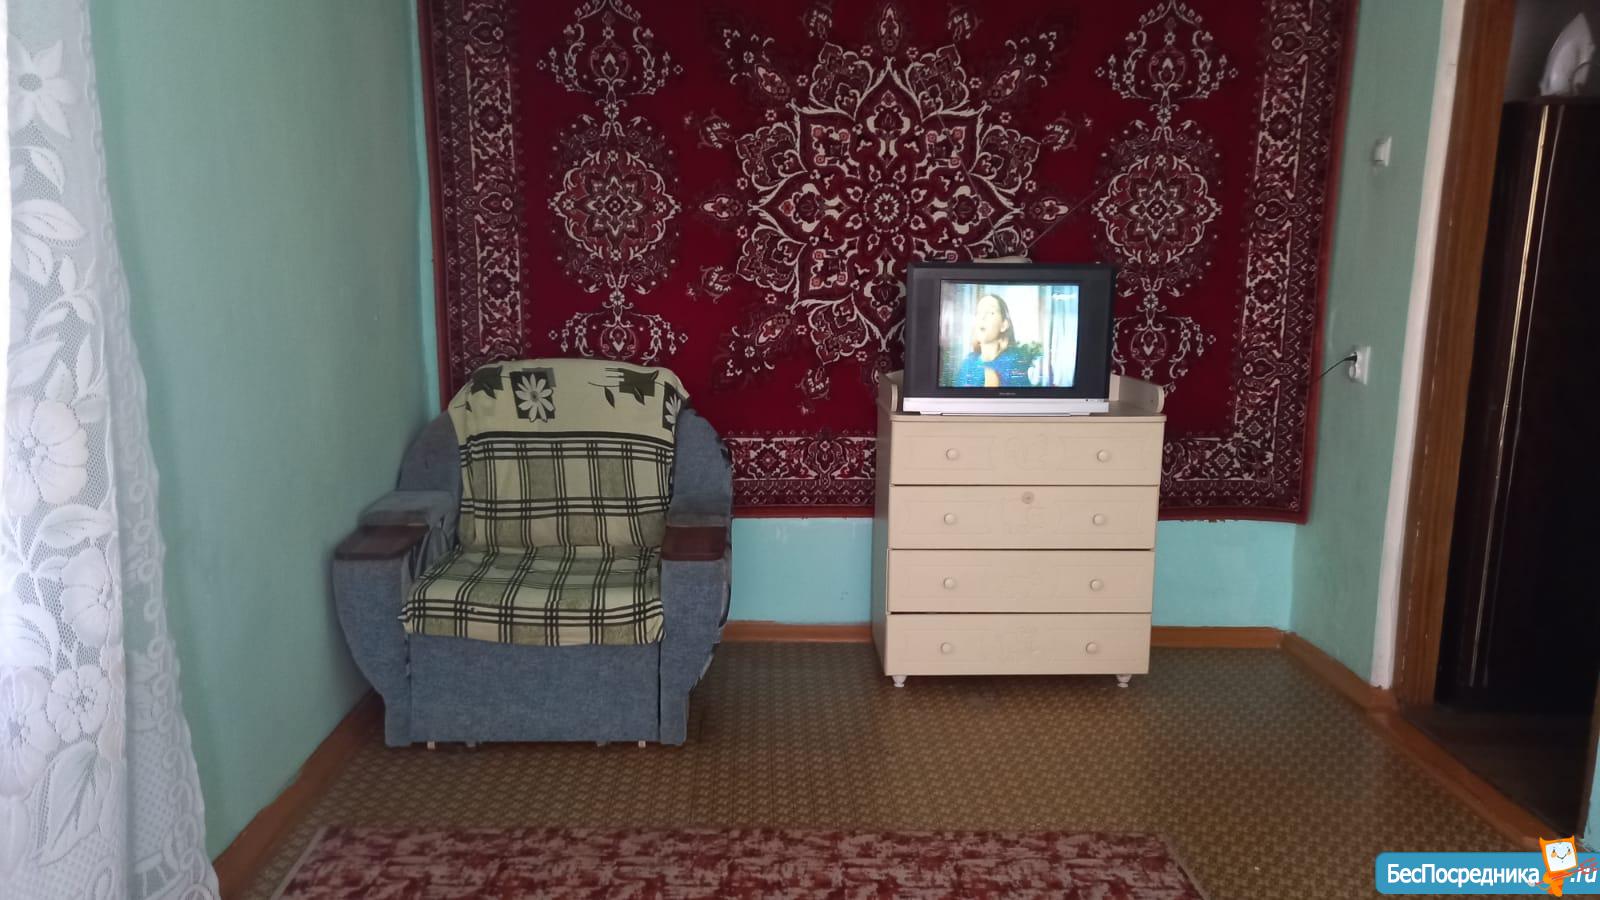 Снять квартиру в мариинске на длительный срок без посредников от хозяина 1 комнатную с мебелью